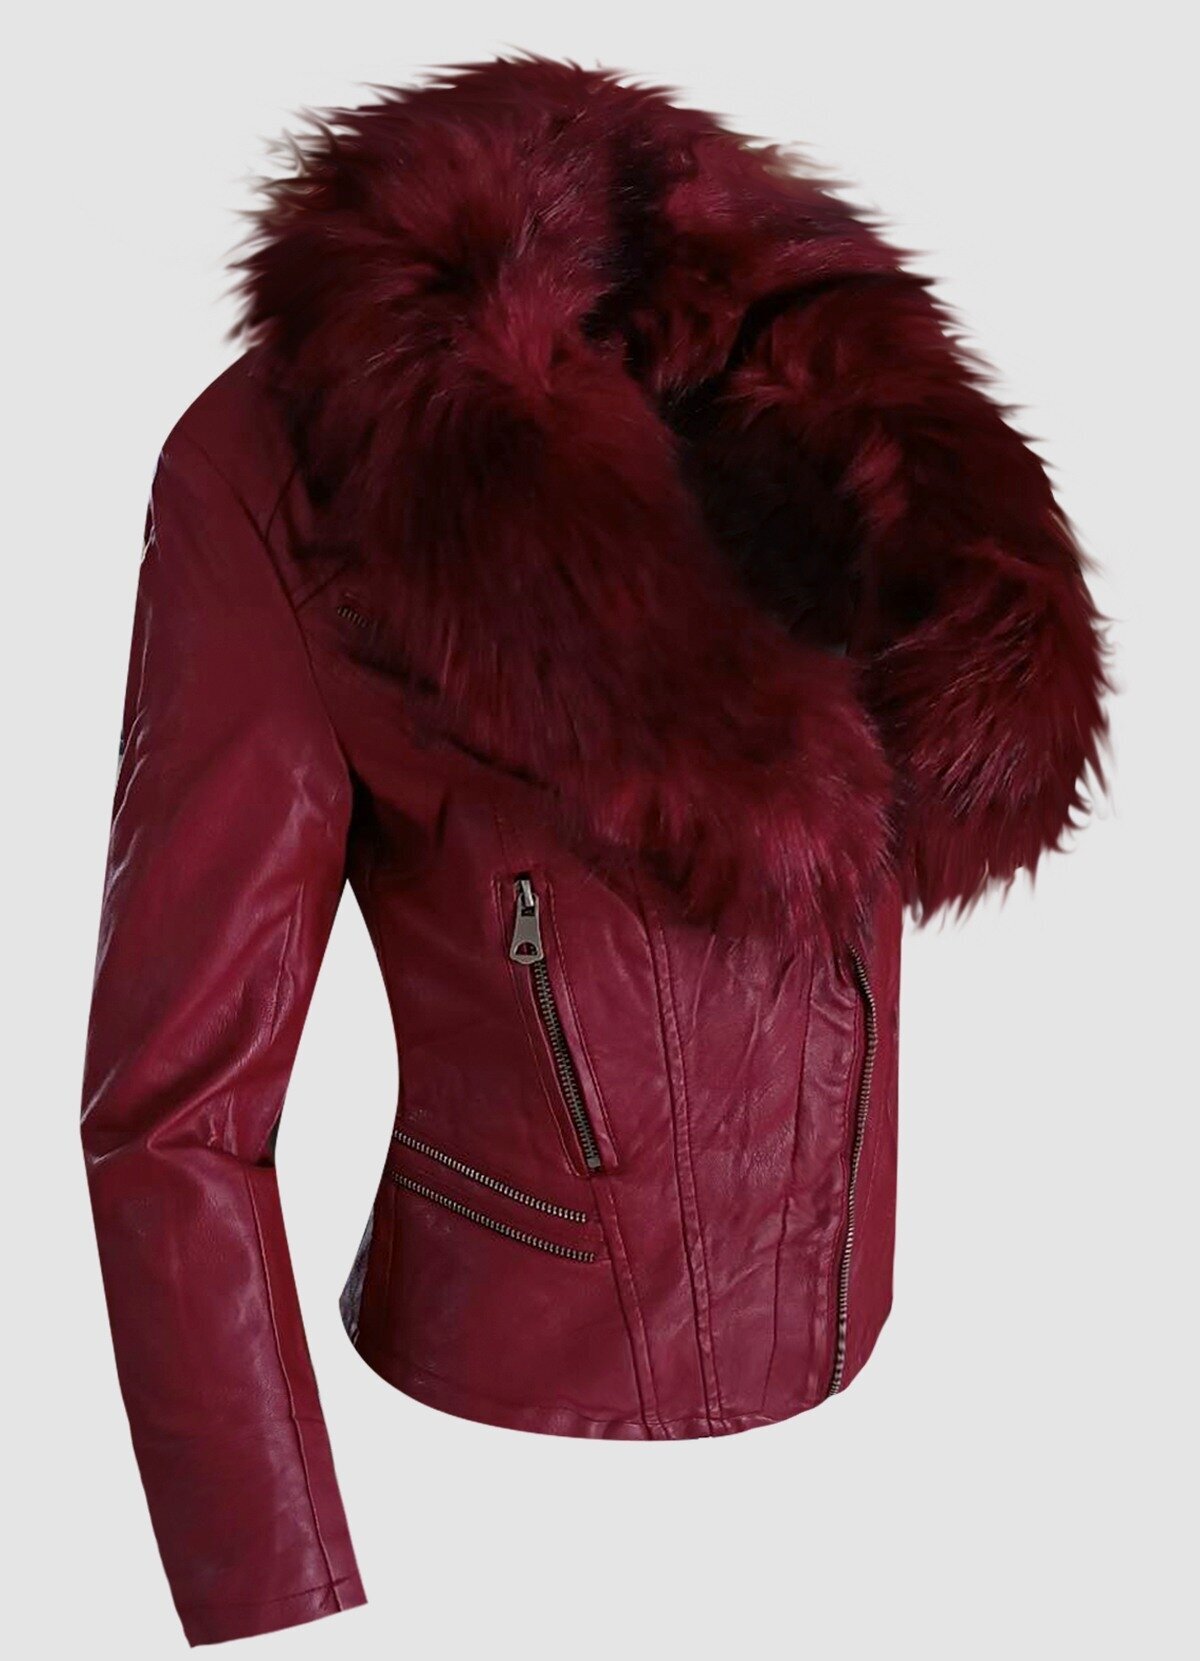 δερματίνη jacket με πλούσια γούνα στο γιακά και επένδυση γούνα εσωτερικά -  Parizianista.gr